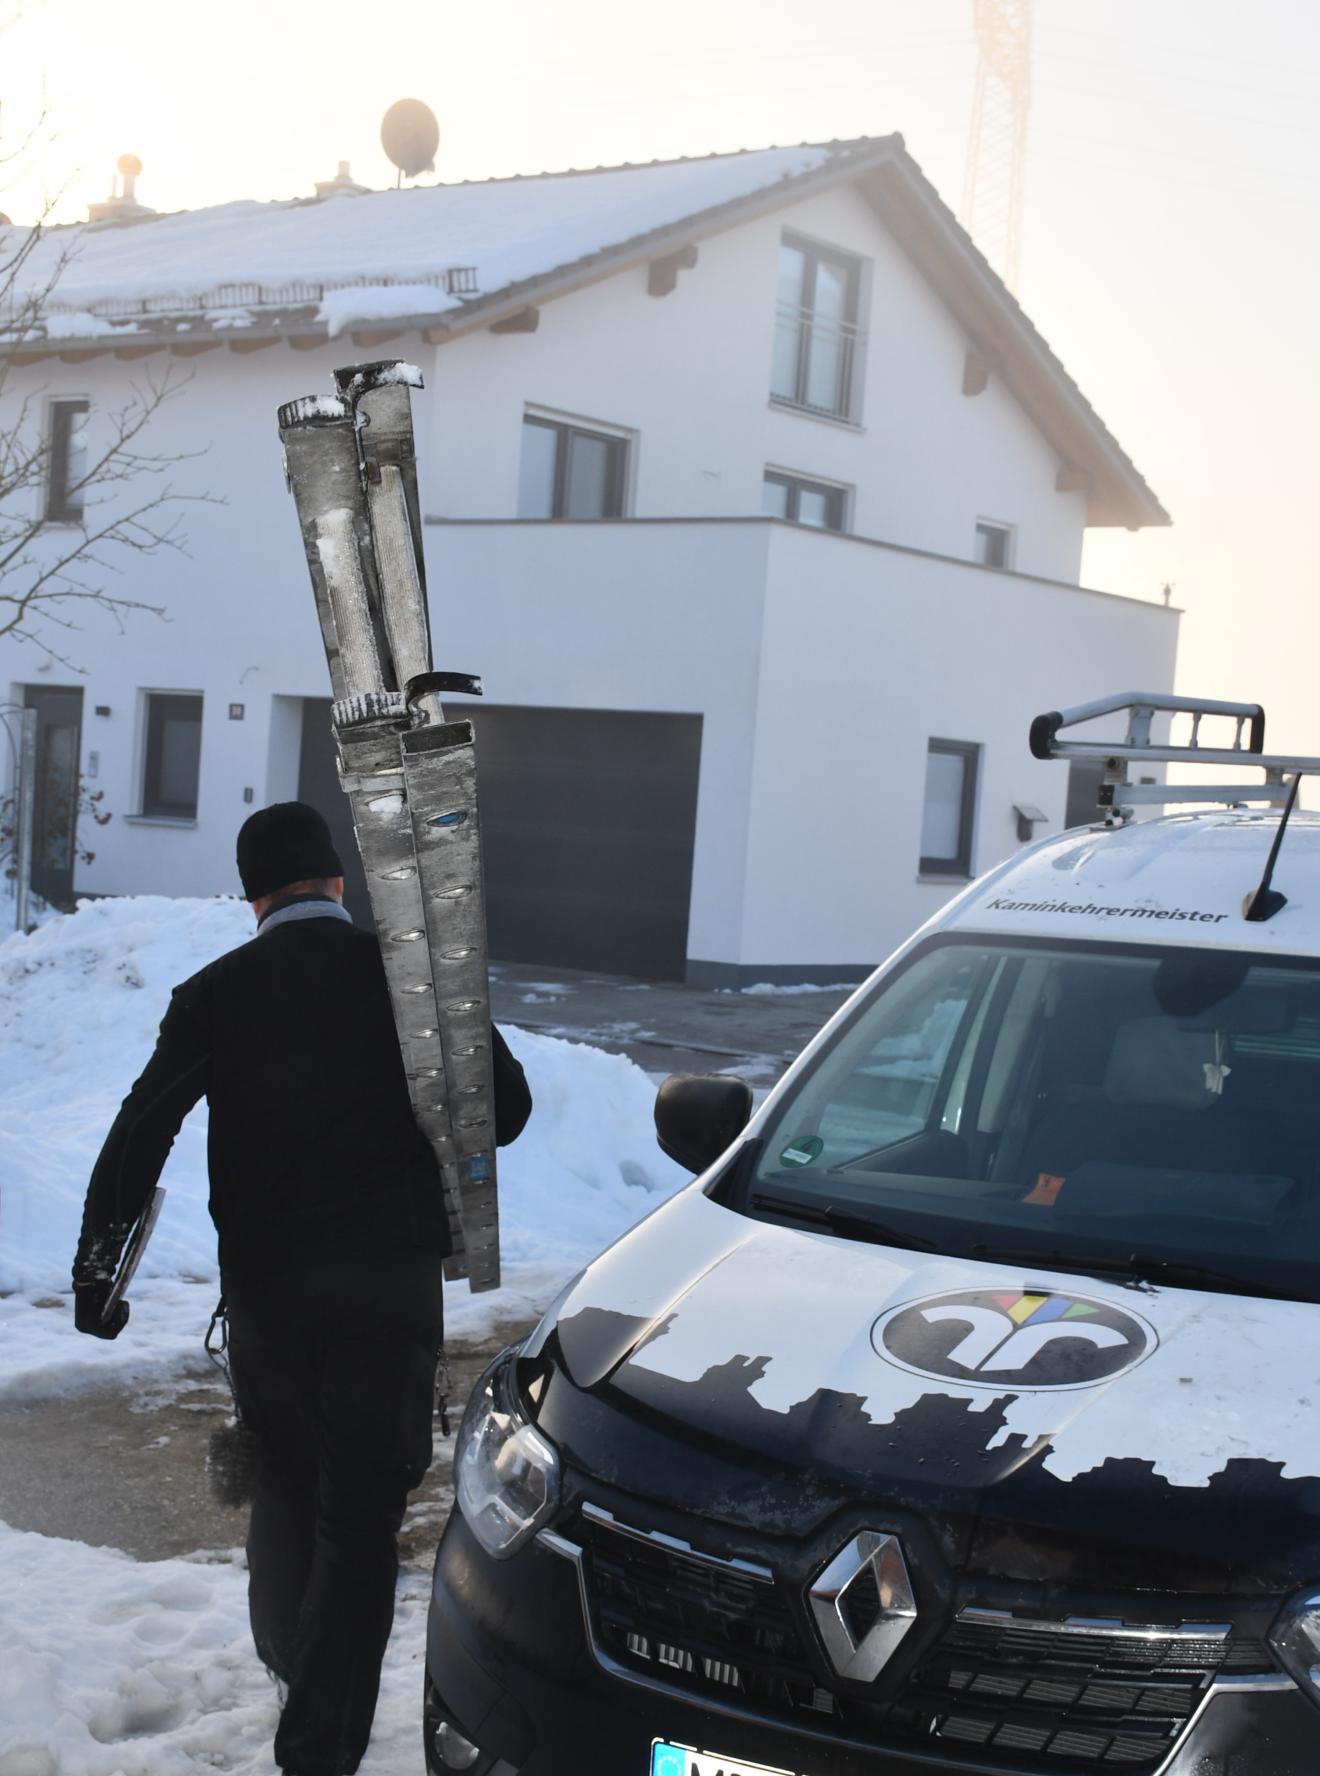 Schornsteinfeger läuft mit Leiter neben Auto auf Haus zu